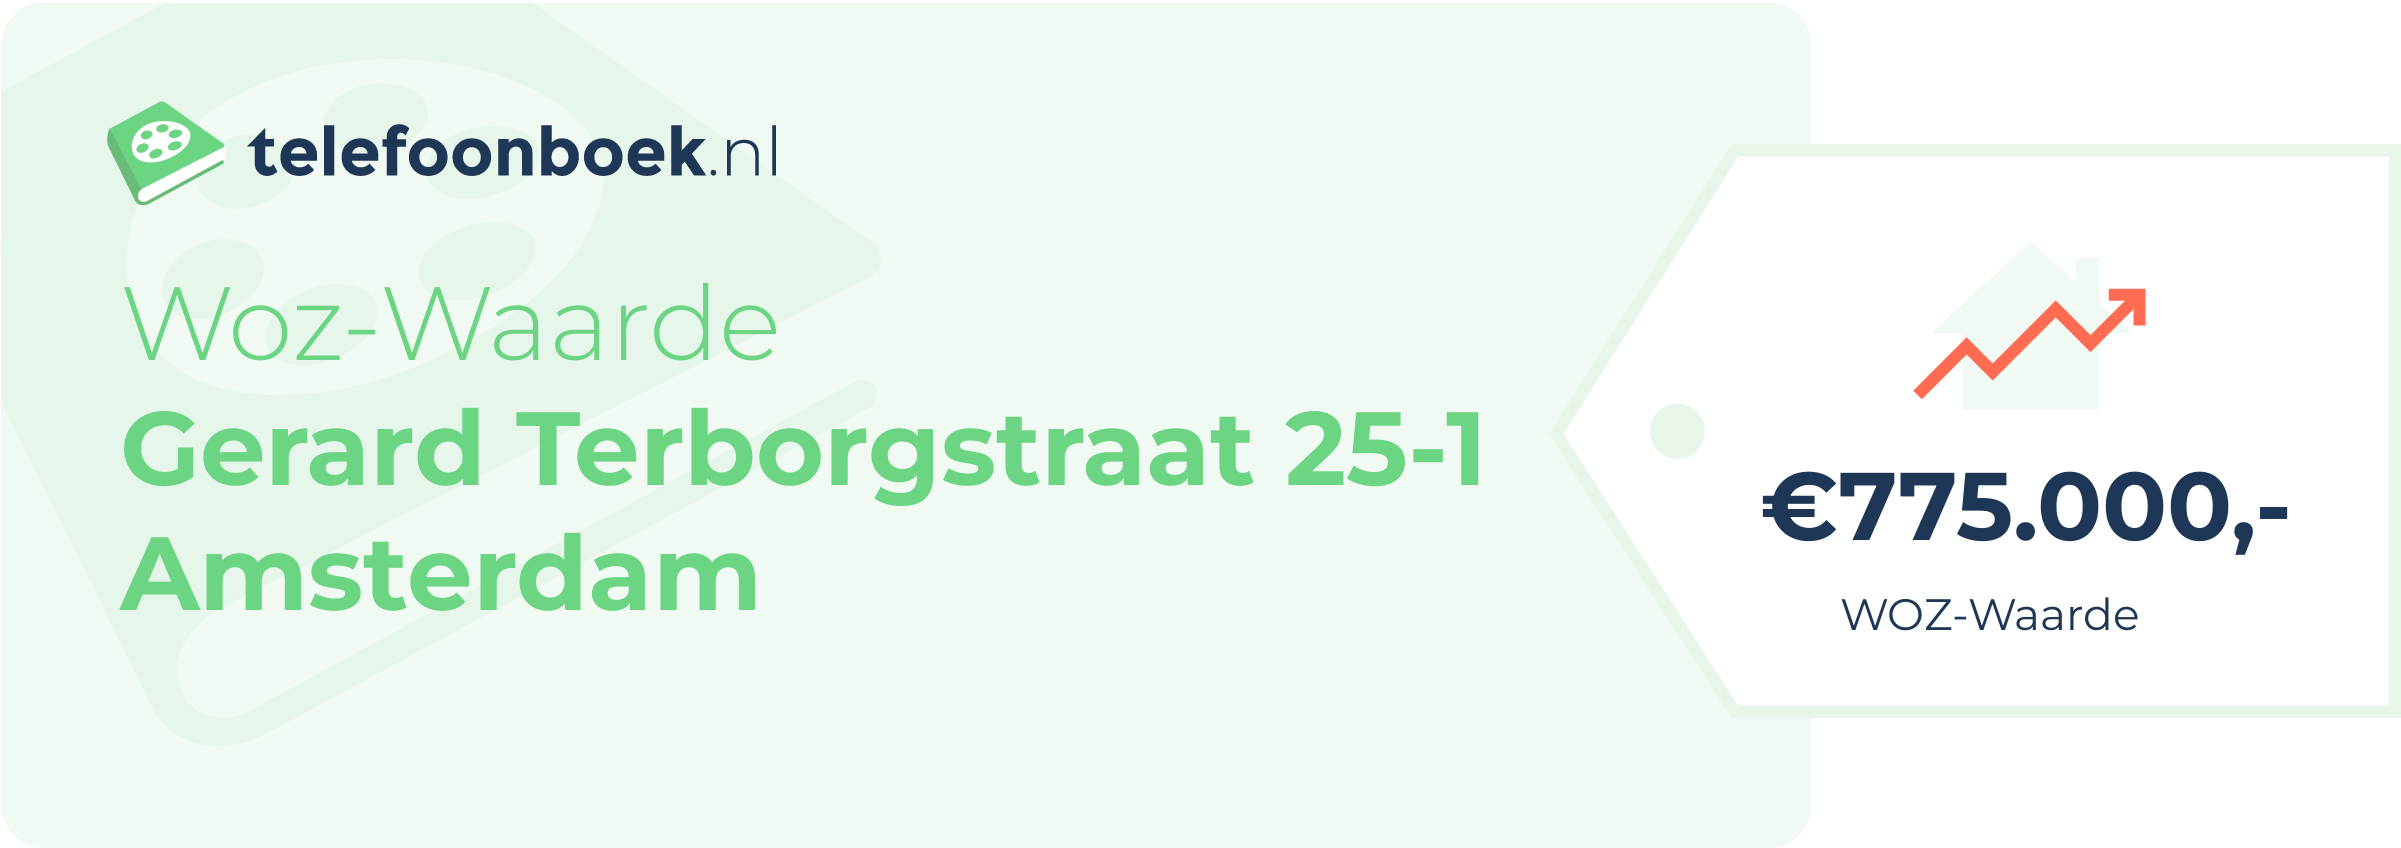 WOZ-waarde Gerard Terborgstraat 25-1 Amsterdam